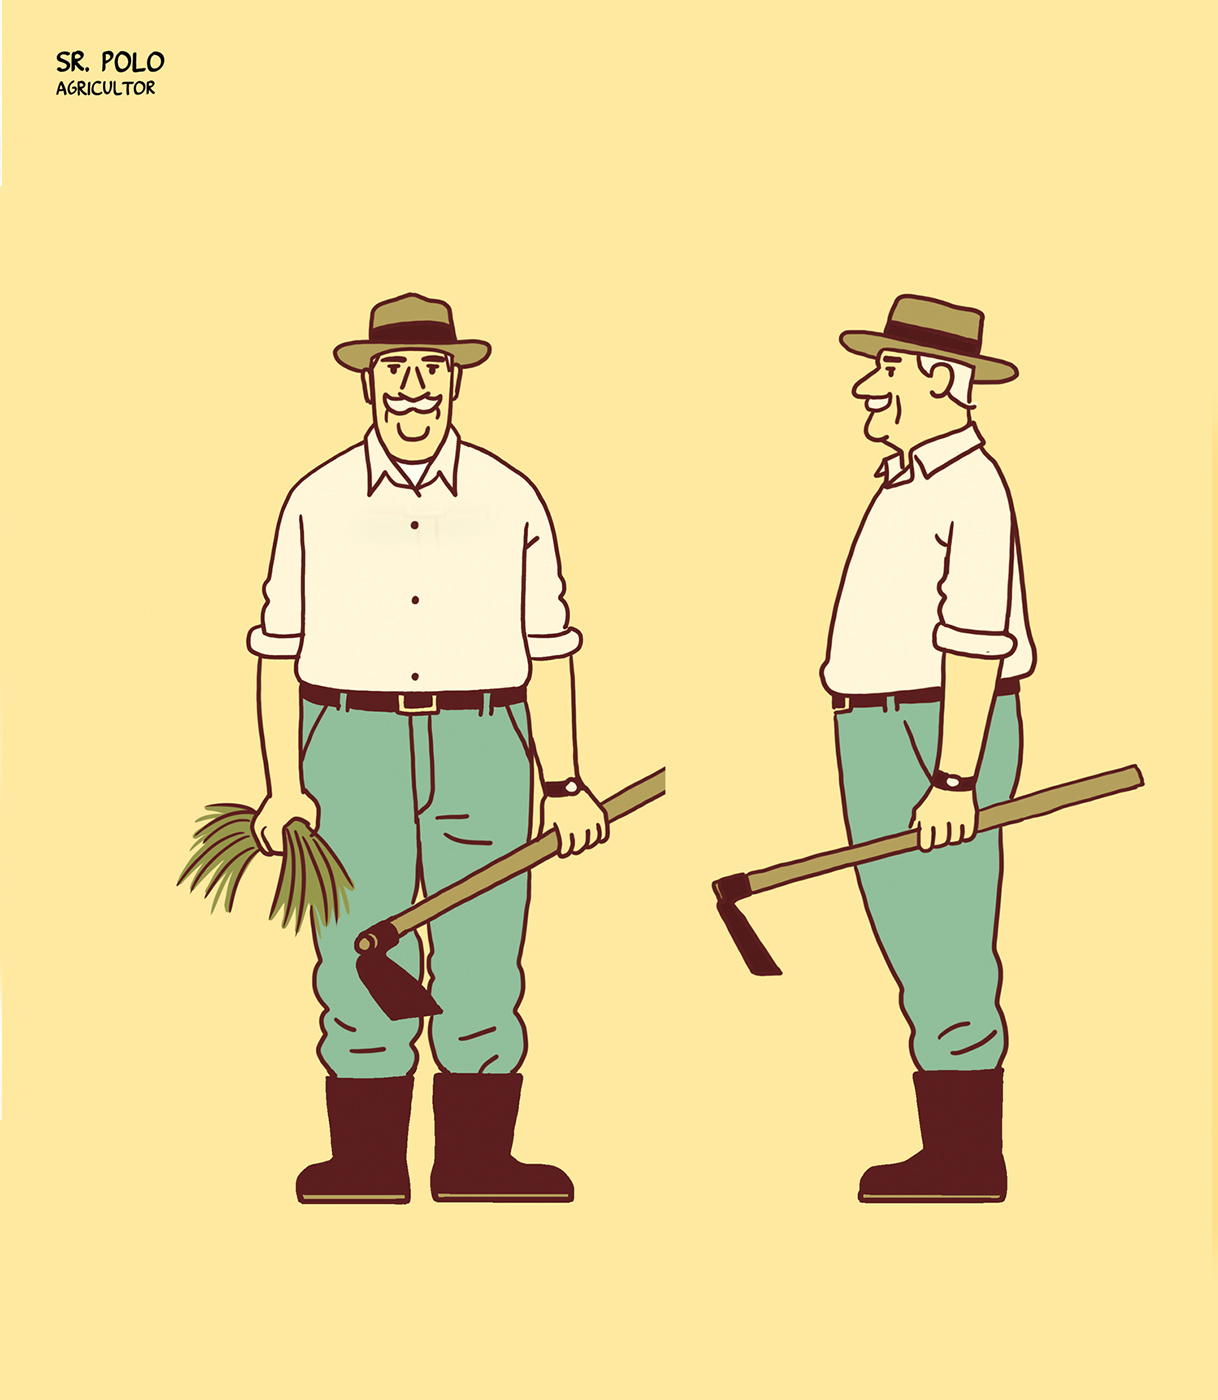 Esquema de dibujo del Sr. Polo como agricultor, imagen de perfil y de frente, con una hazada y unas hierbas en la mano